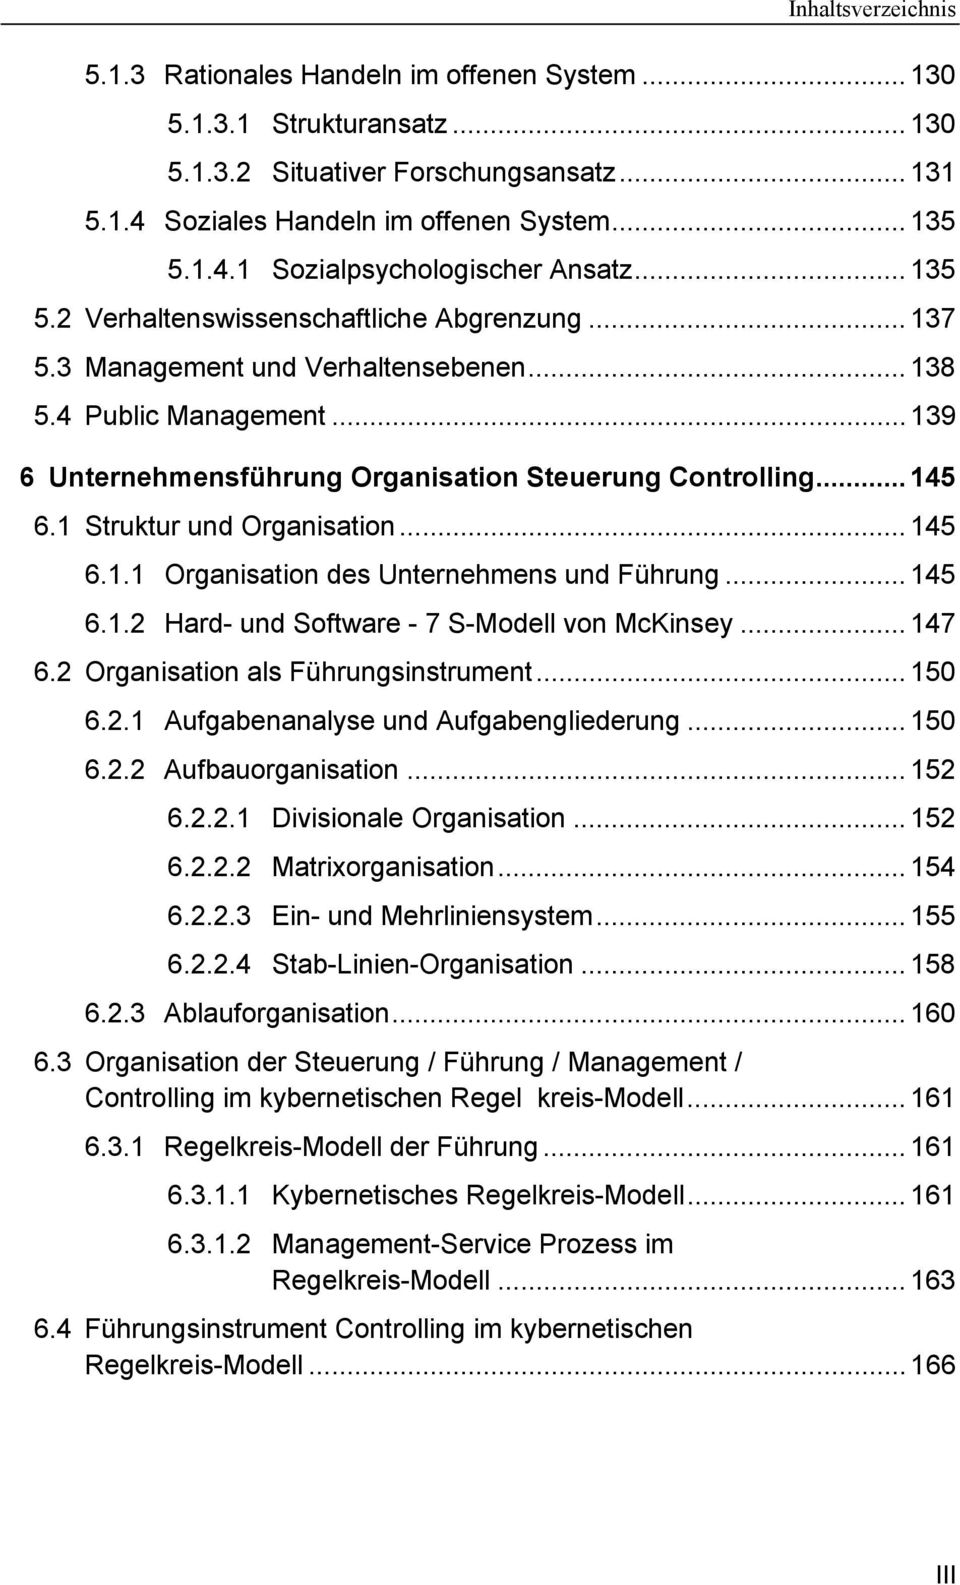 1 Struktur und Organisation... 145 6.1.1 Organisation des Unternehmens und Führung... 145 6.1.2 Hard- und Software - 7 S-Modell von McKinsey... 147 6.2 Organisation als Führungsinstrument... 150 6.2.1 Aufgabenanalyse und Aufgabengliederung.